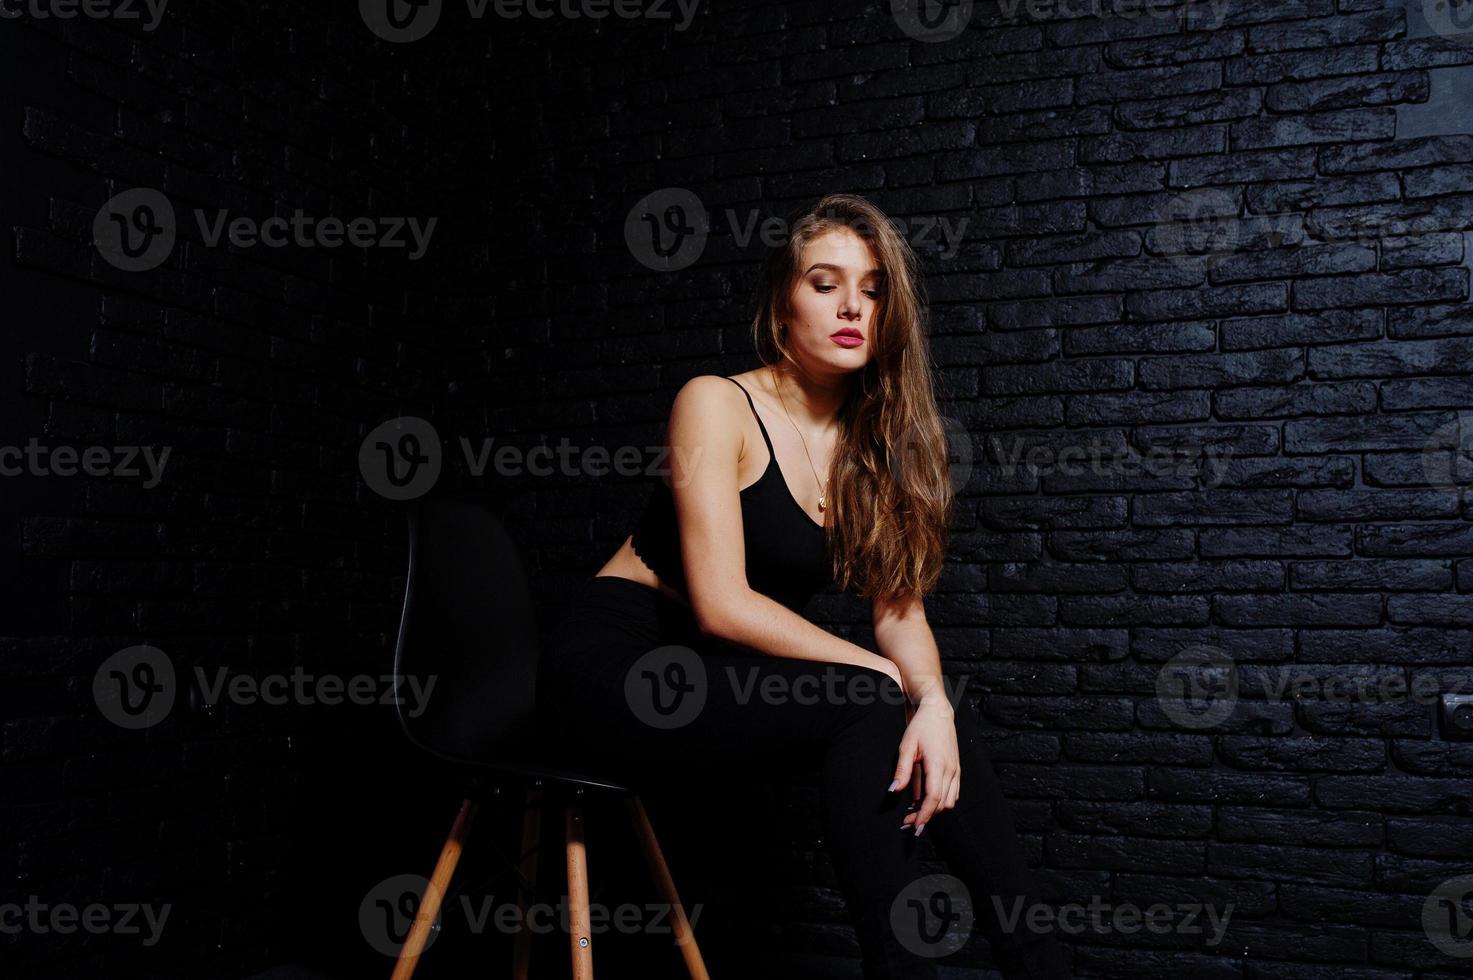 menina morena bonita usa preto, sentado e posando na cadeira no estúdio contra a parede de tijolos escuros. retrato de modelo de estúdio. foto